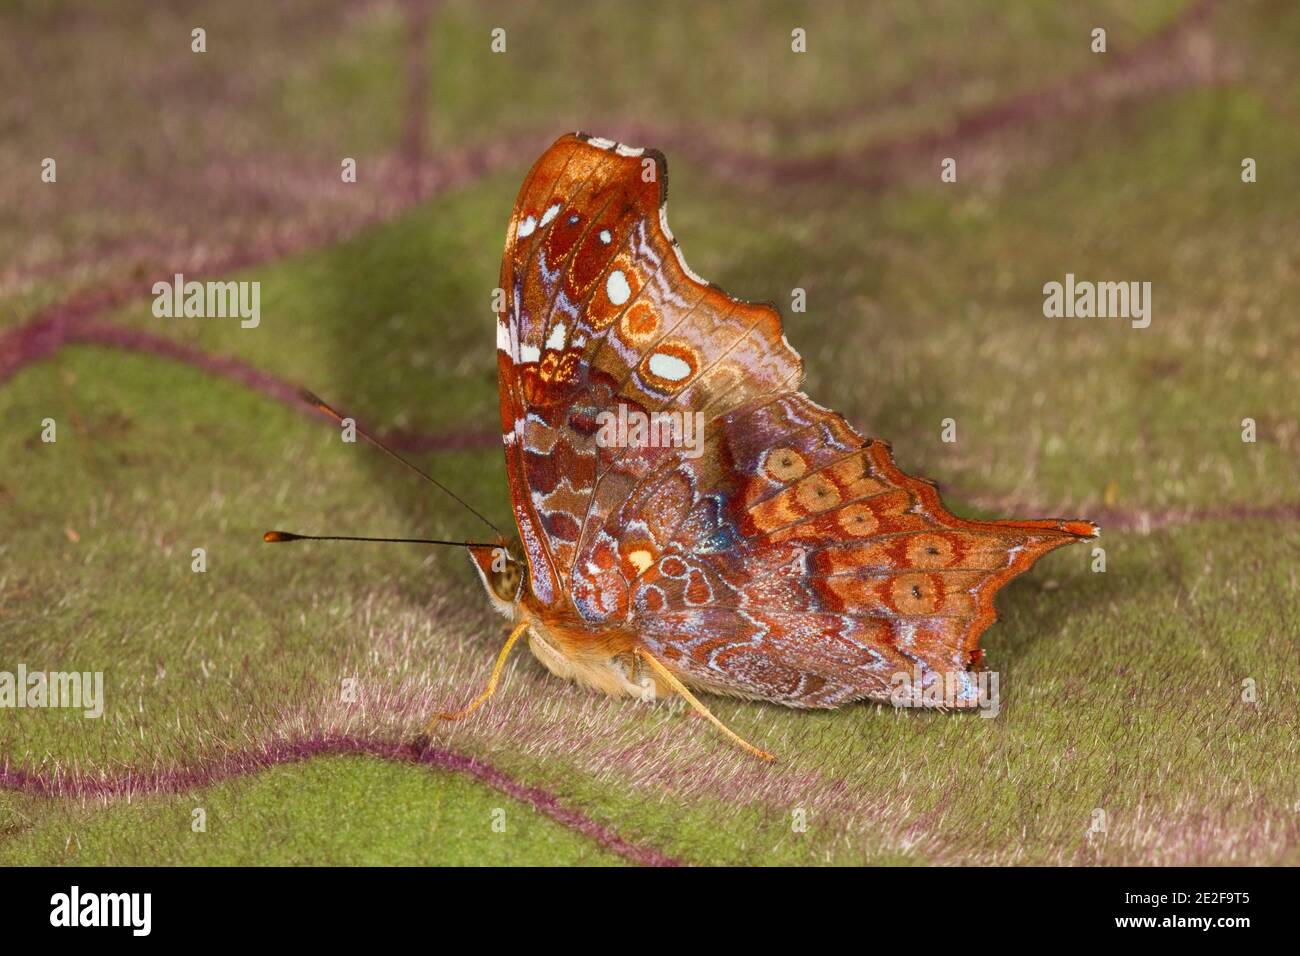 Vista ventral de mariposa con patas de pincel, Hypanartia kefersteini, Nymphalidae. Foto de stock